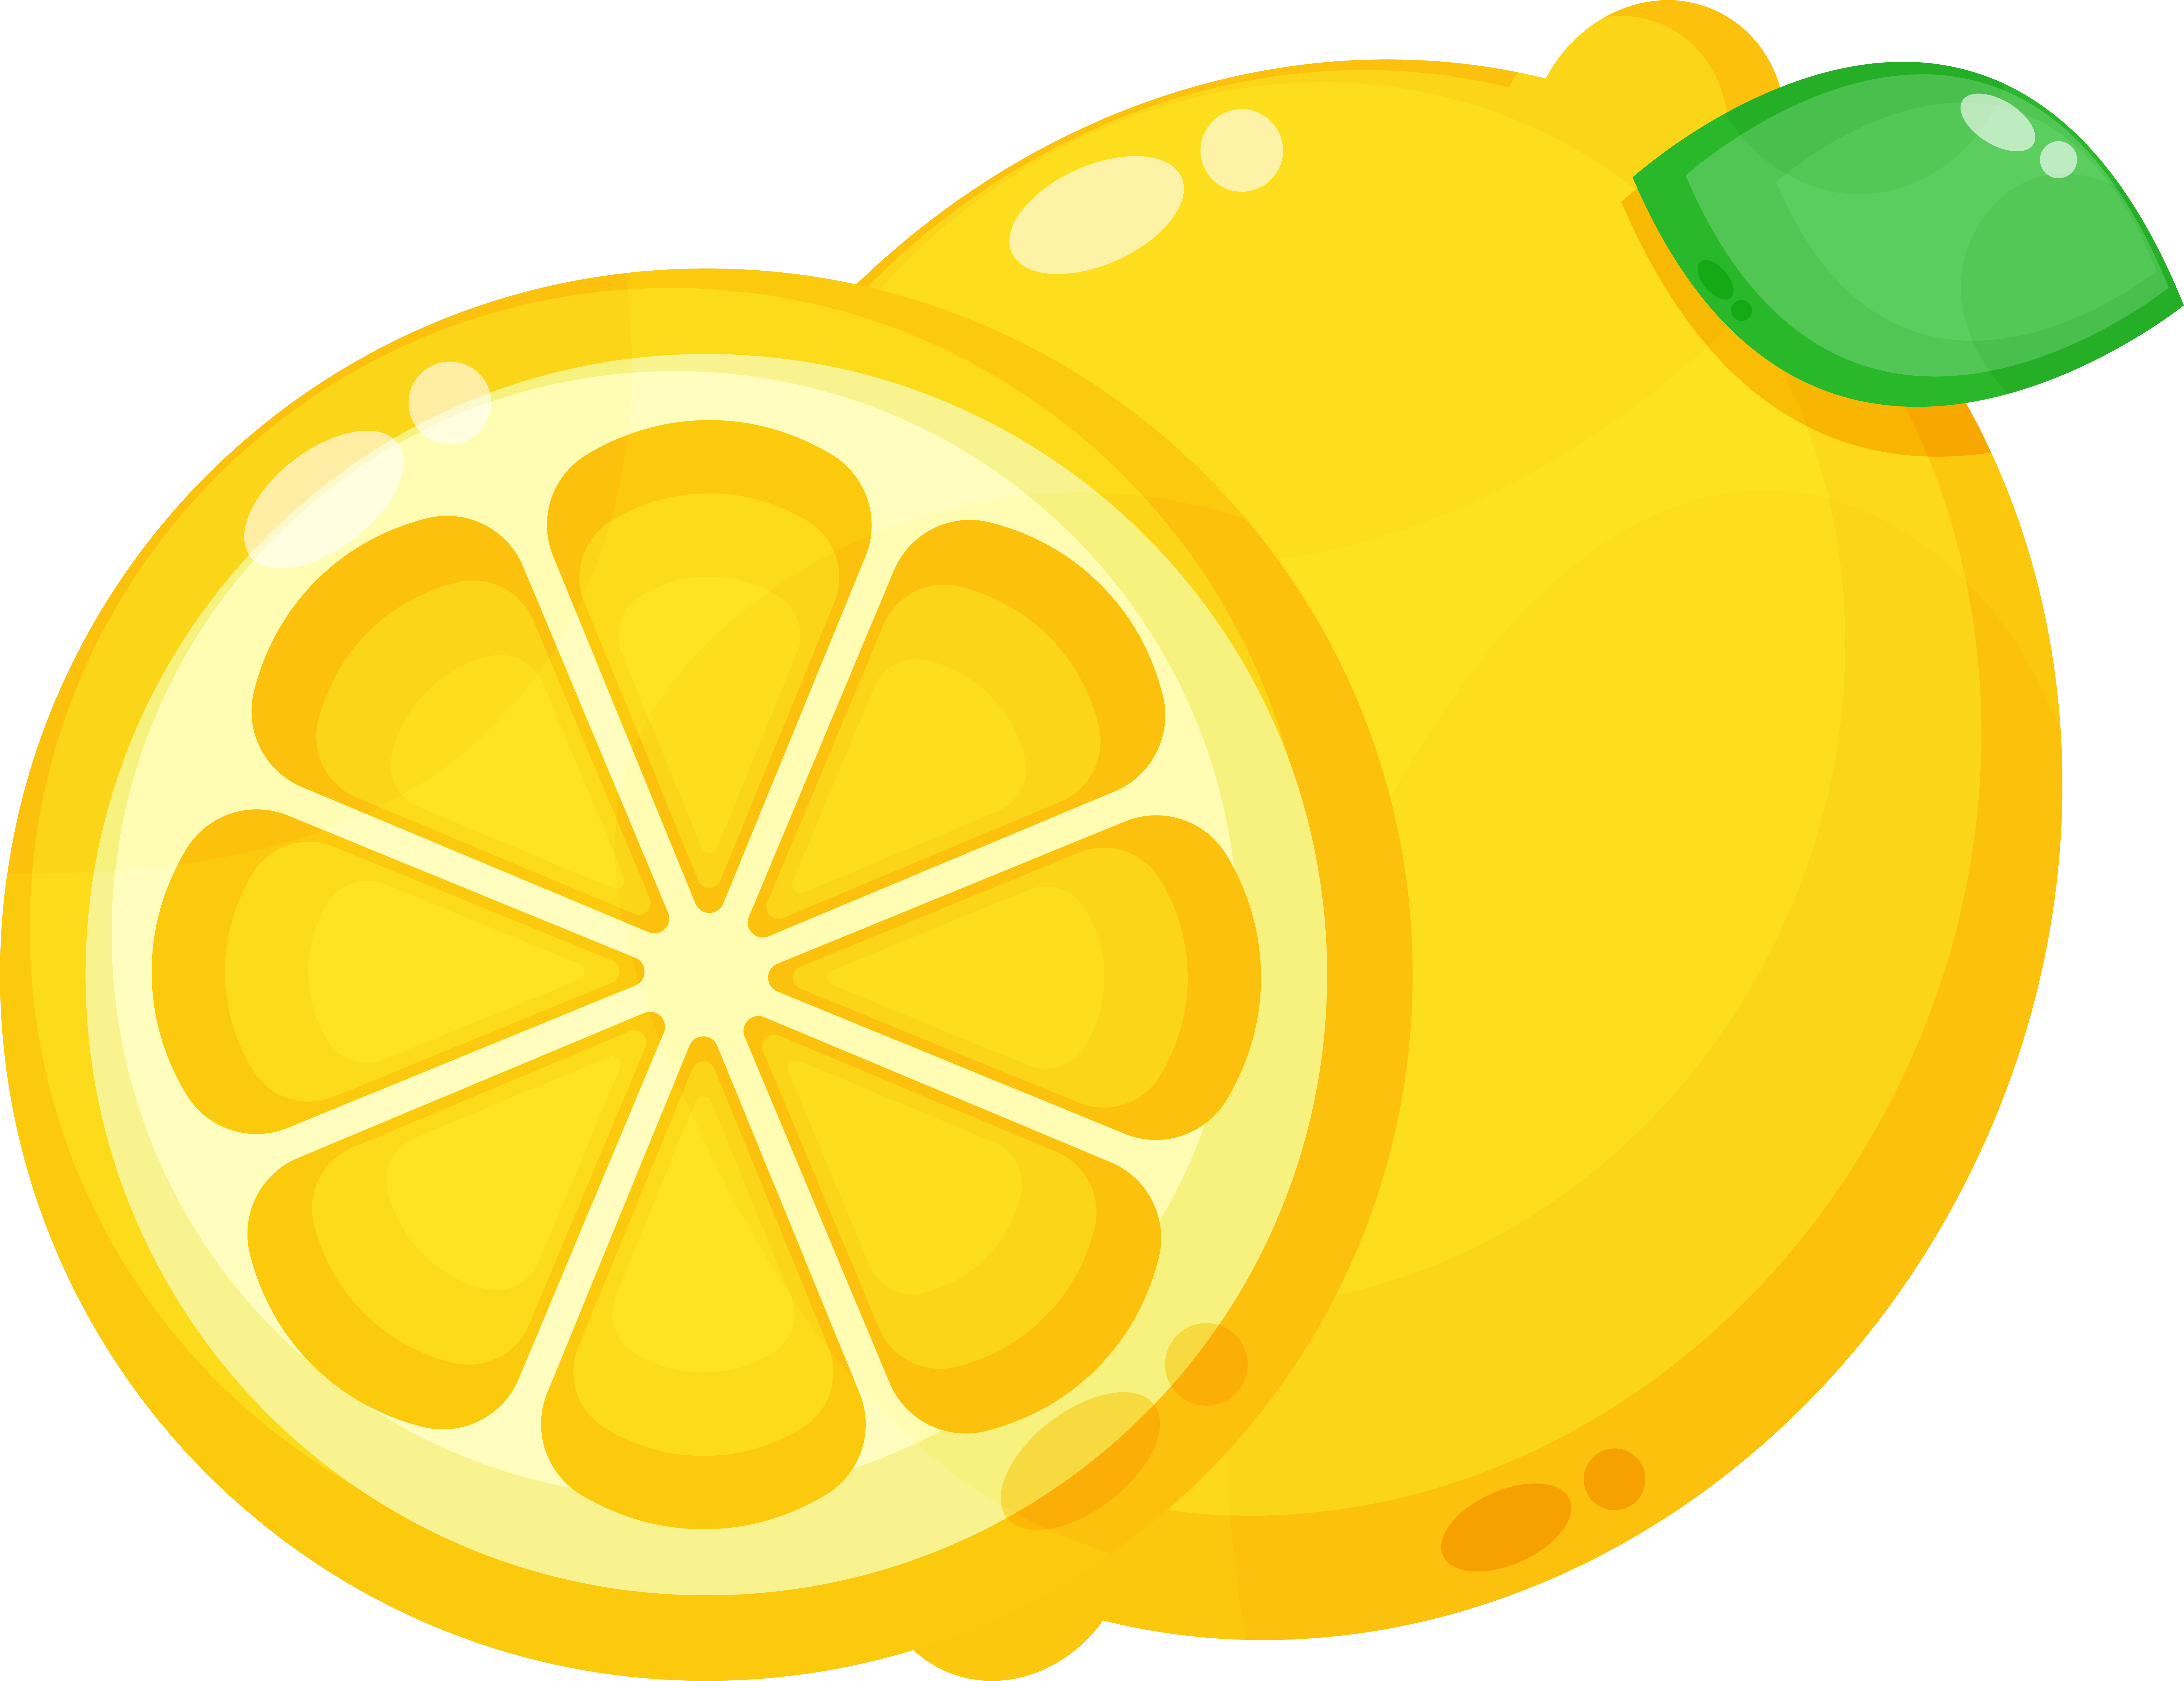 Botanical - Lemon Balm